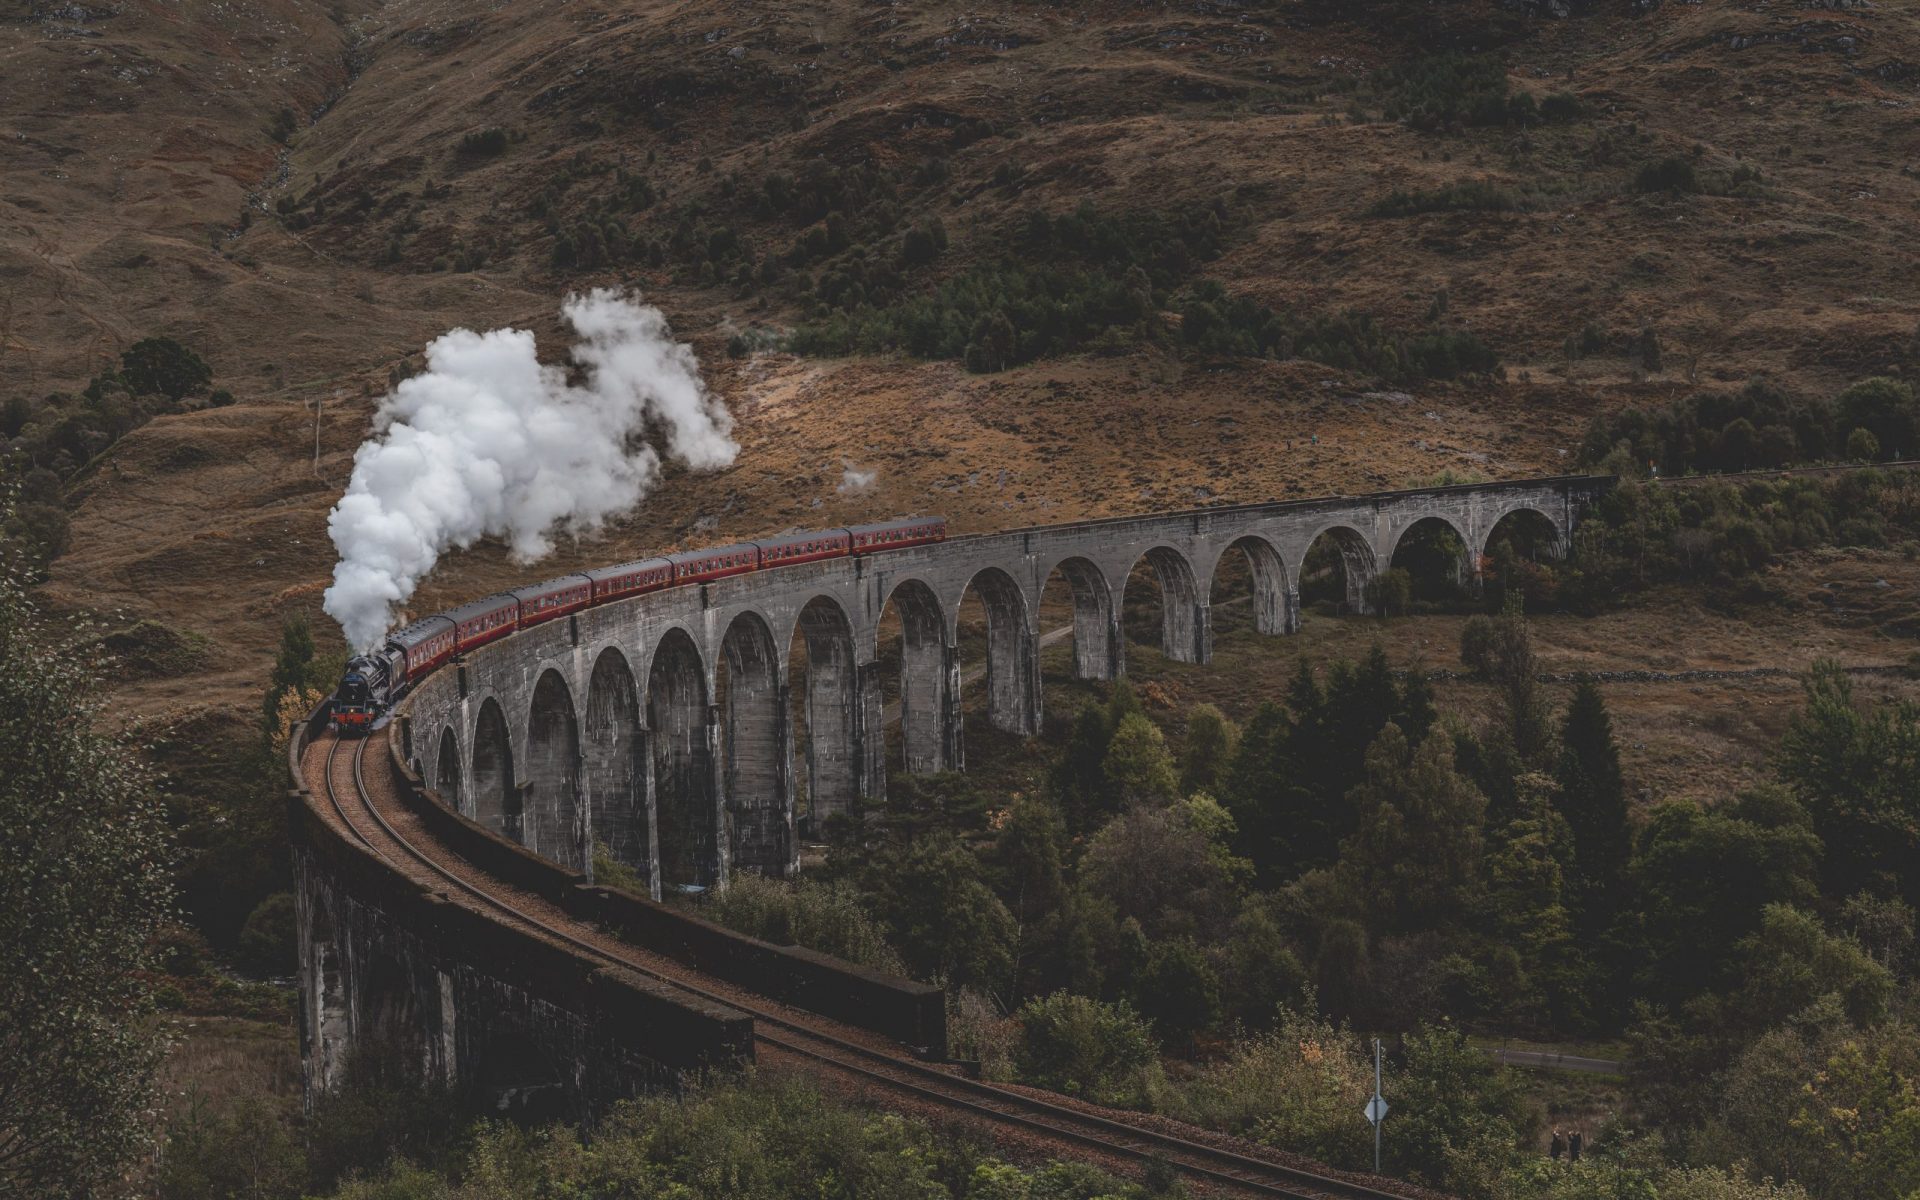 Der Hogwarts Express aus Harry Potter fährt durch die Landschaft